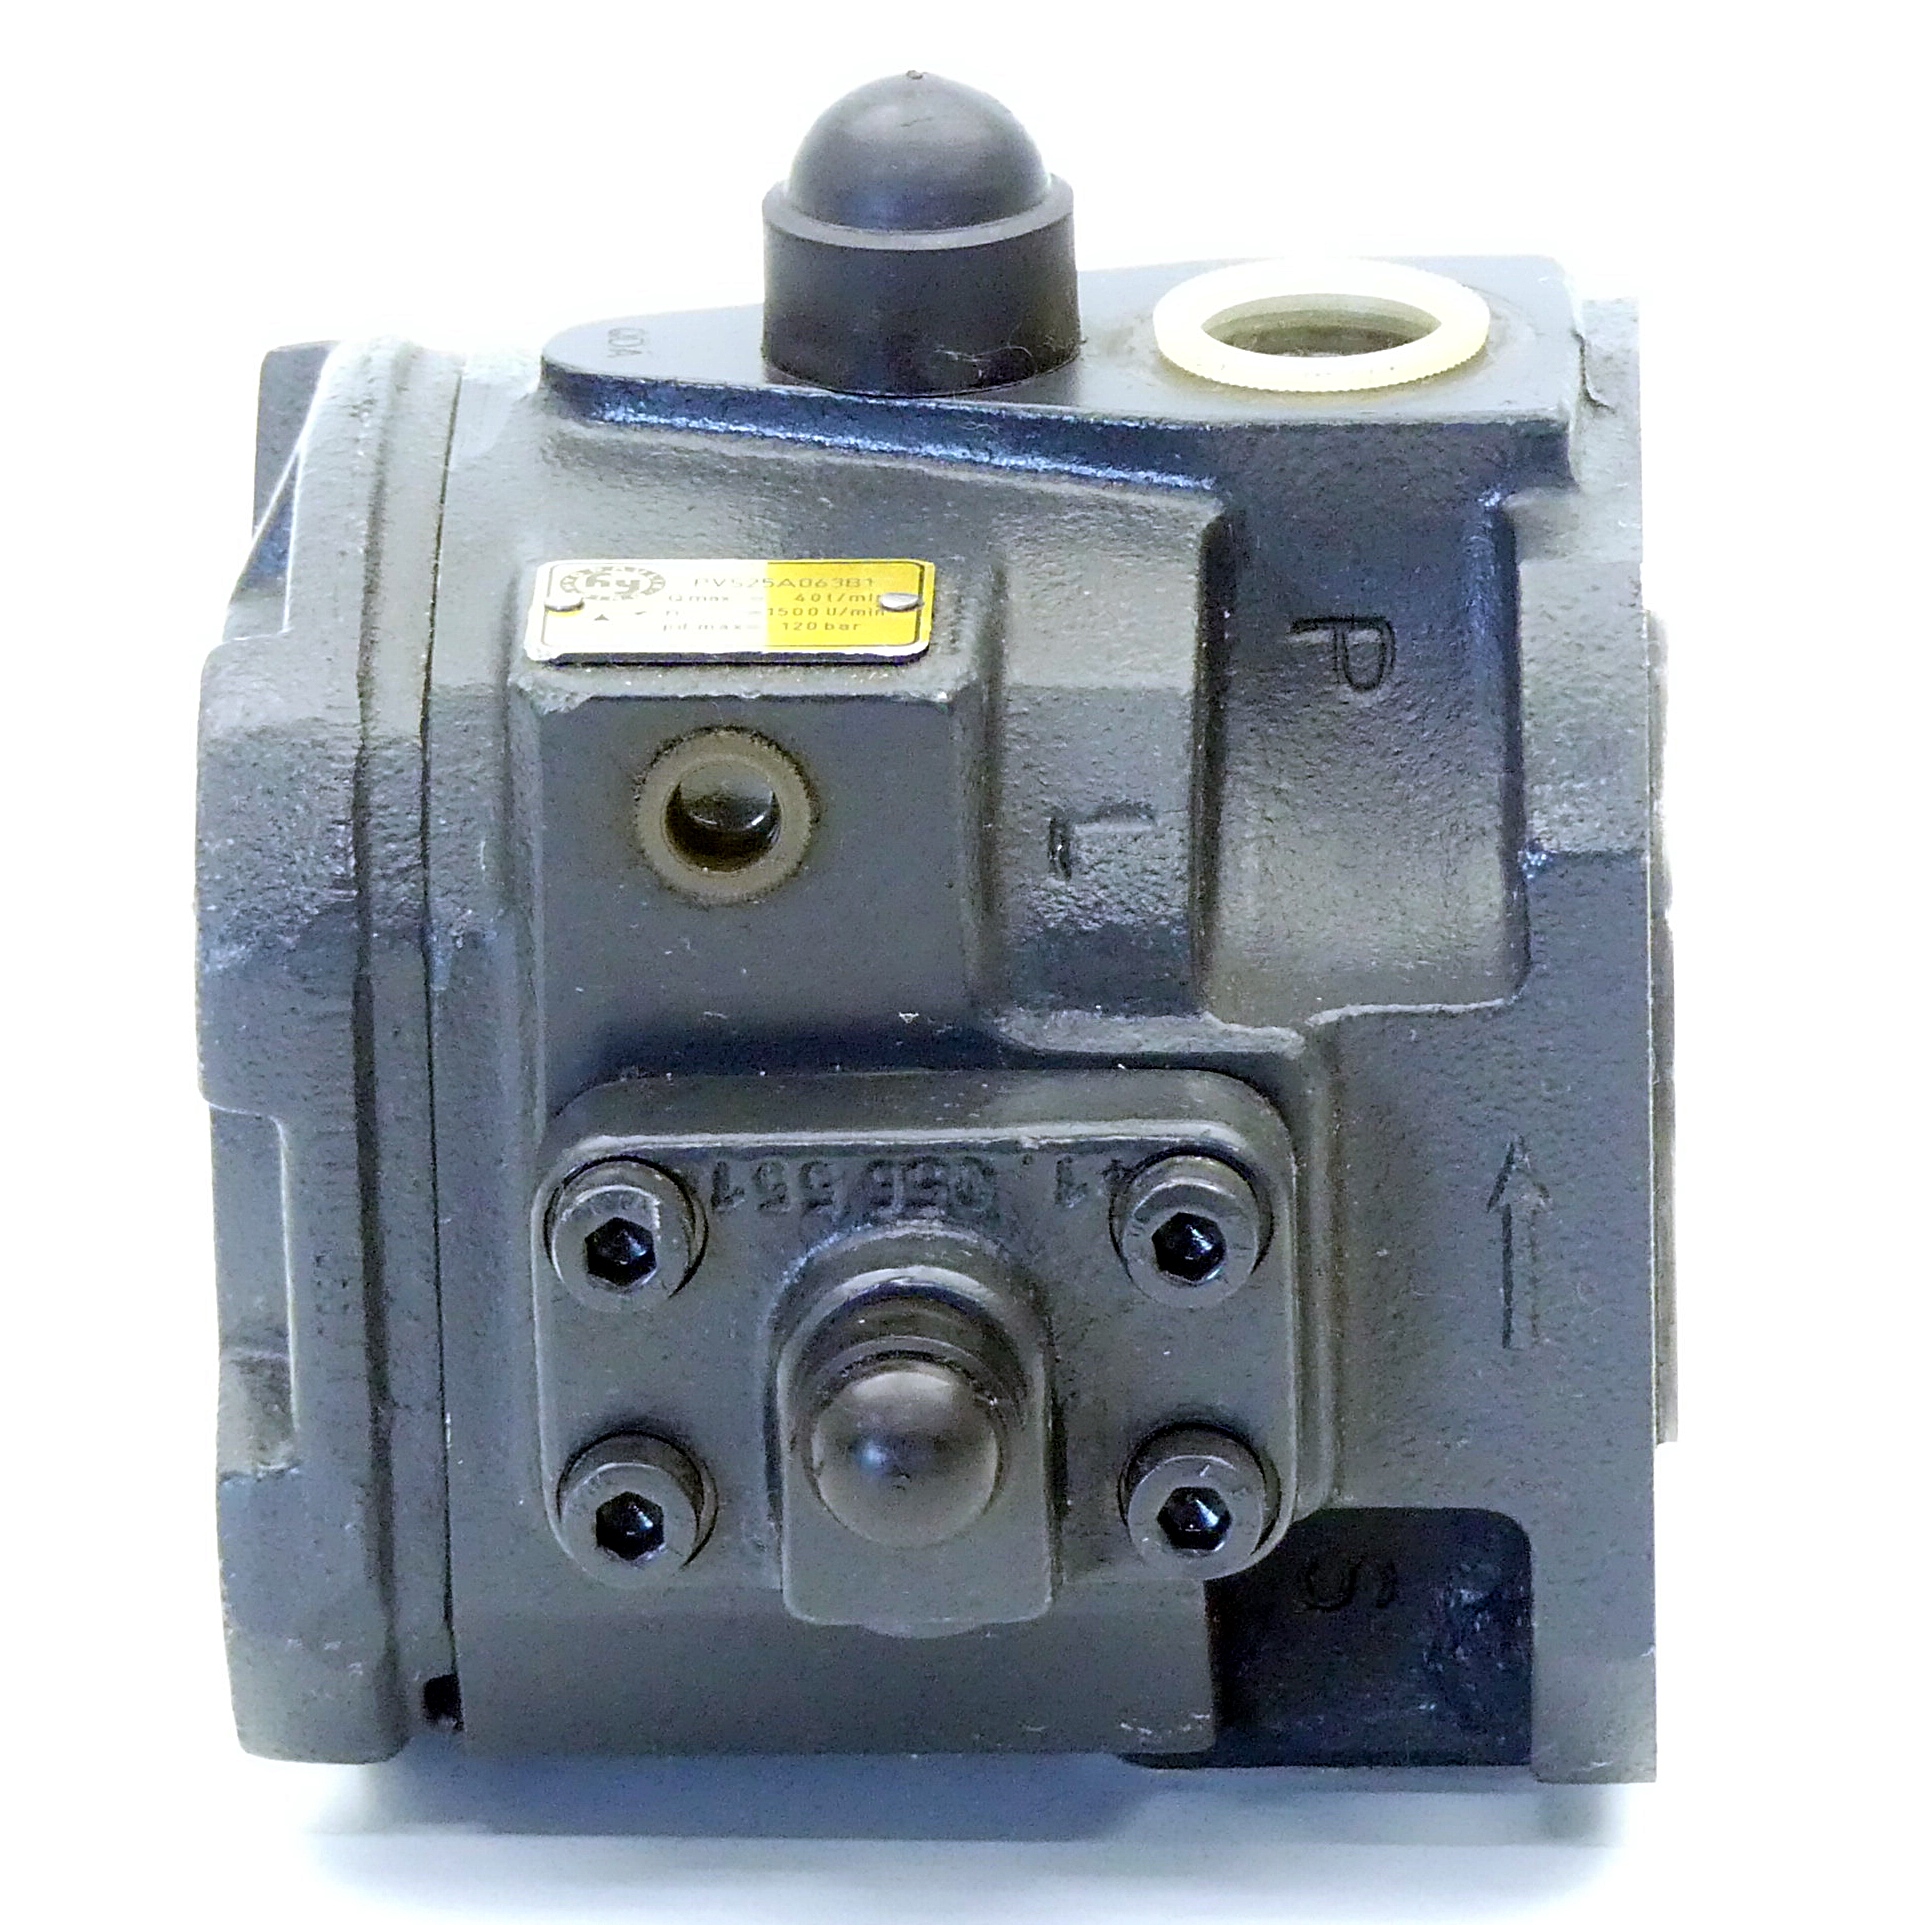 Hydraulikpumpe PVS25A063B1 